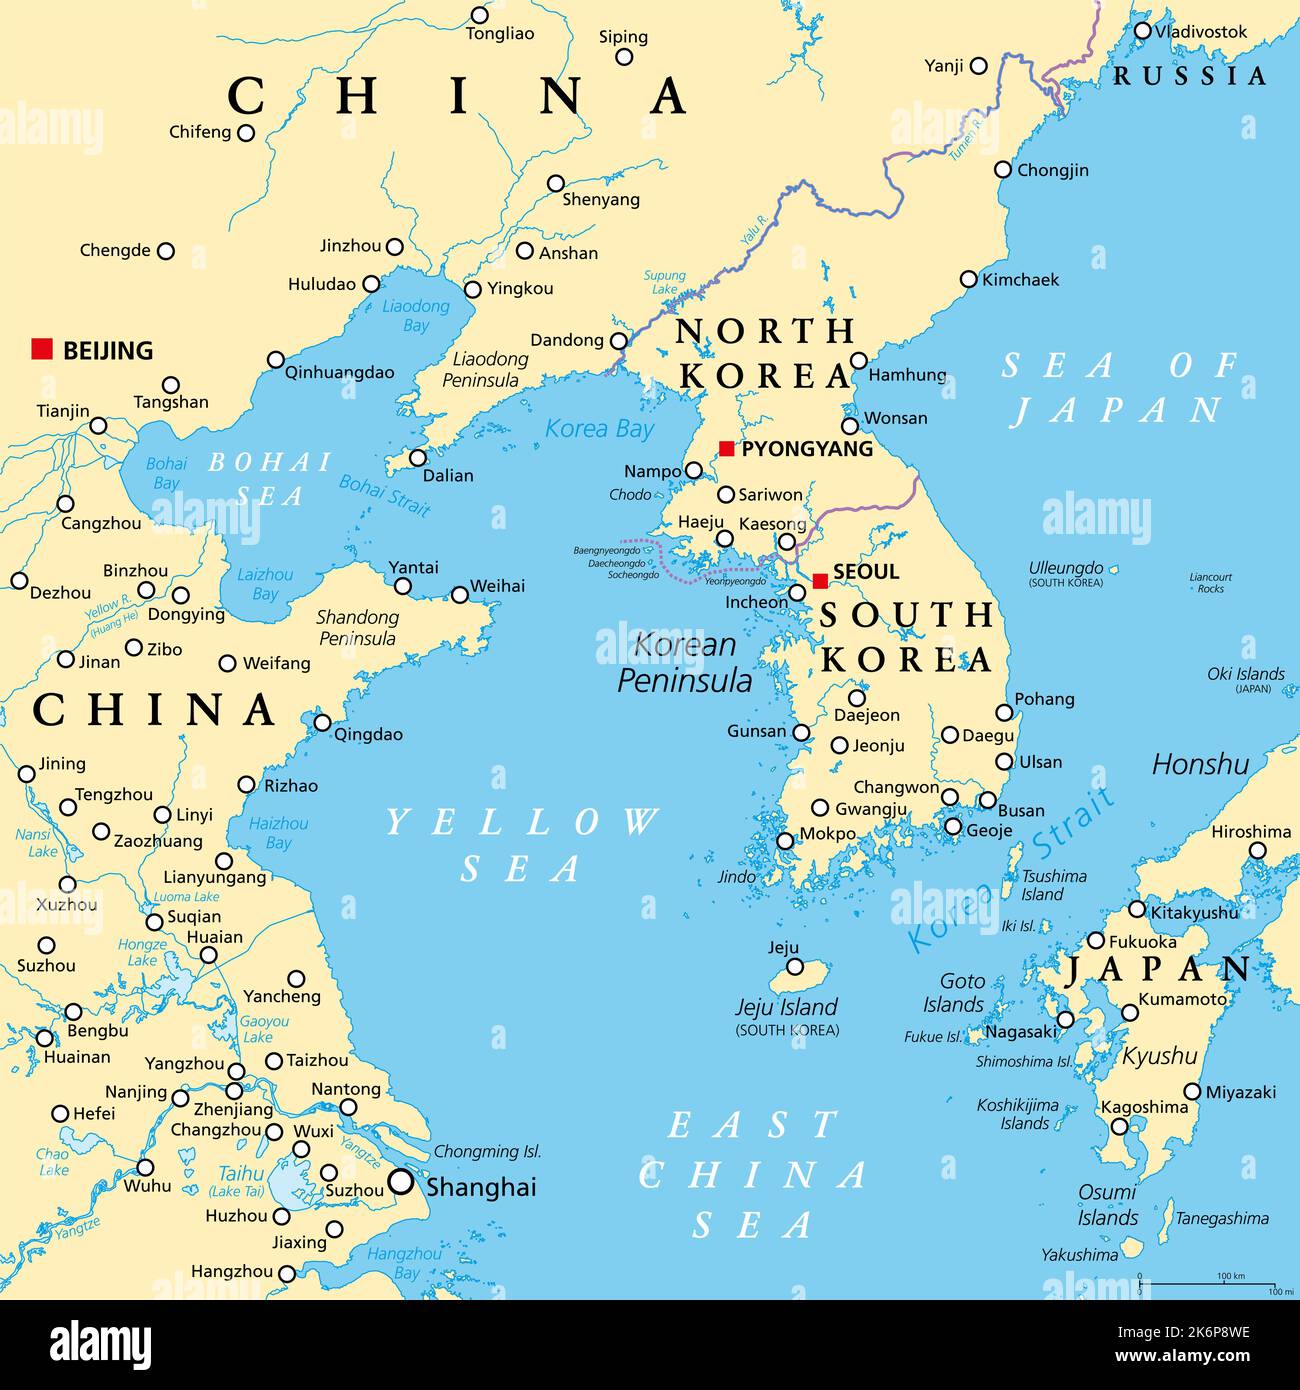 Regione della penisola coreana, mappa politica. Regione peninsulare Corea in Asia orientale, divisa tra i 2 paesi Corea del Nord e Corea del Sud. Foto Stock